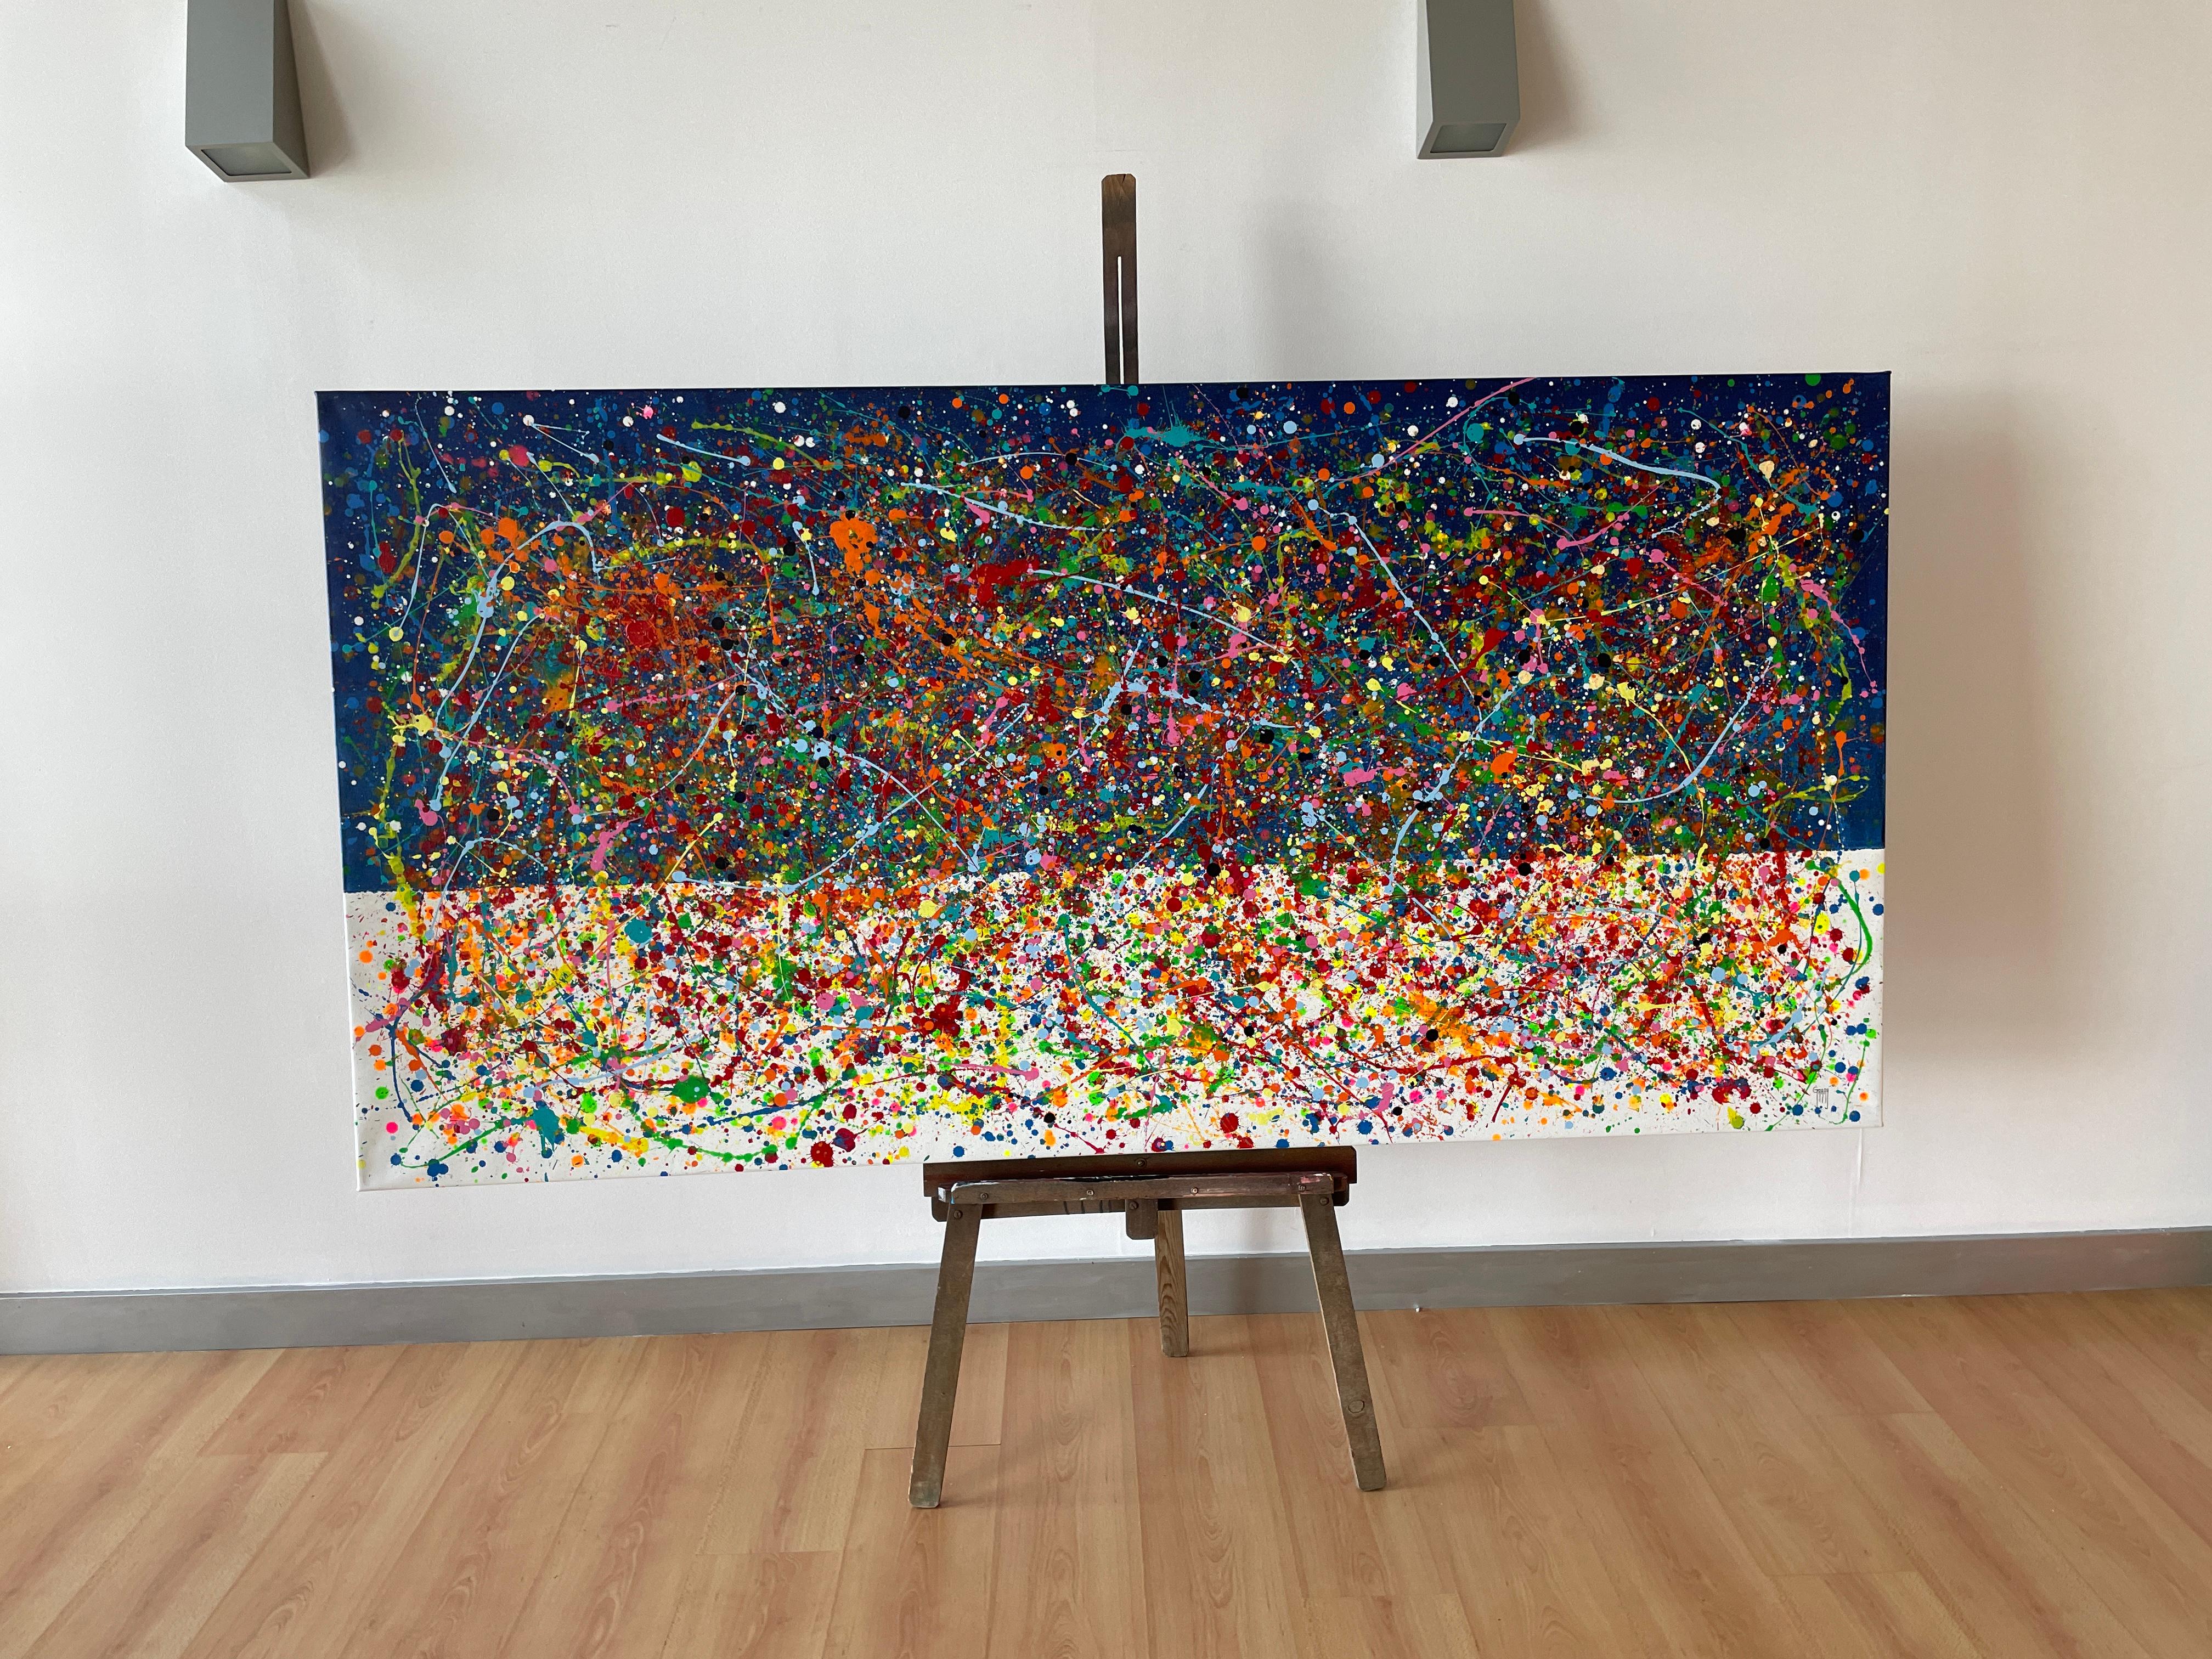  Mer de verre - Expressionnisme abstrait Painting par Juan Jose Garay